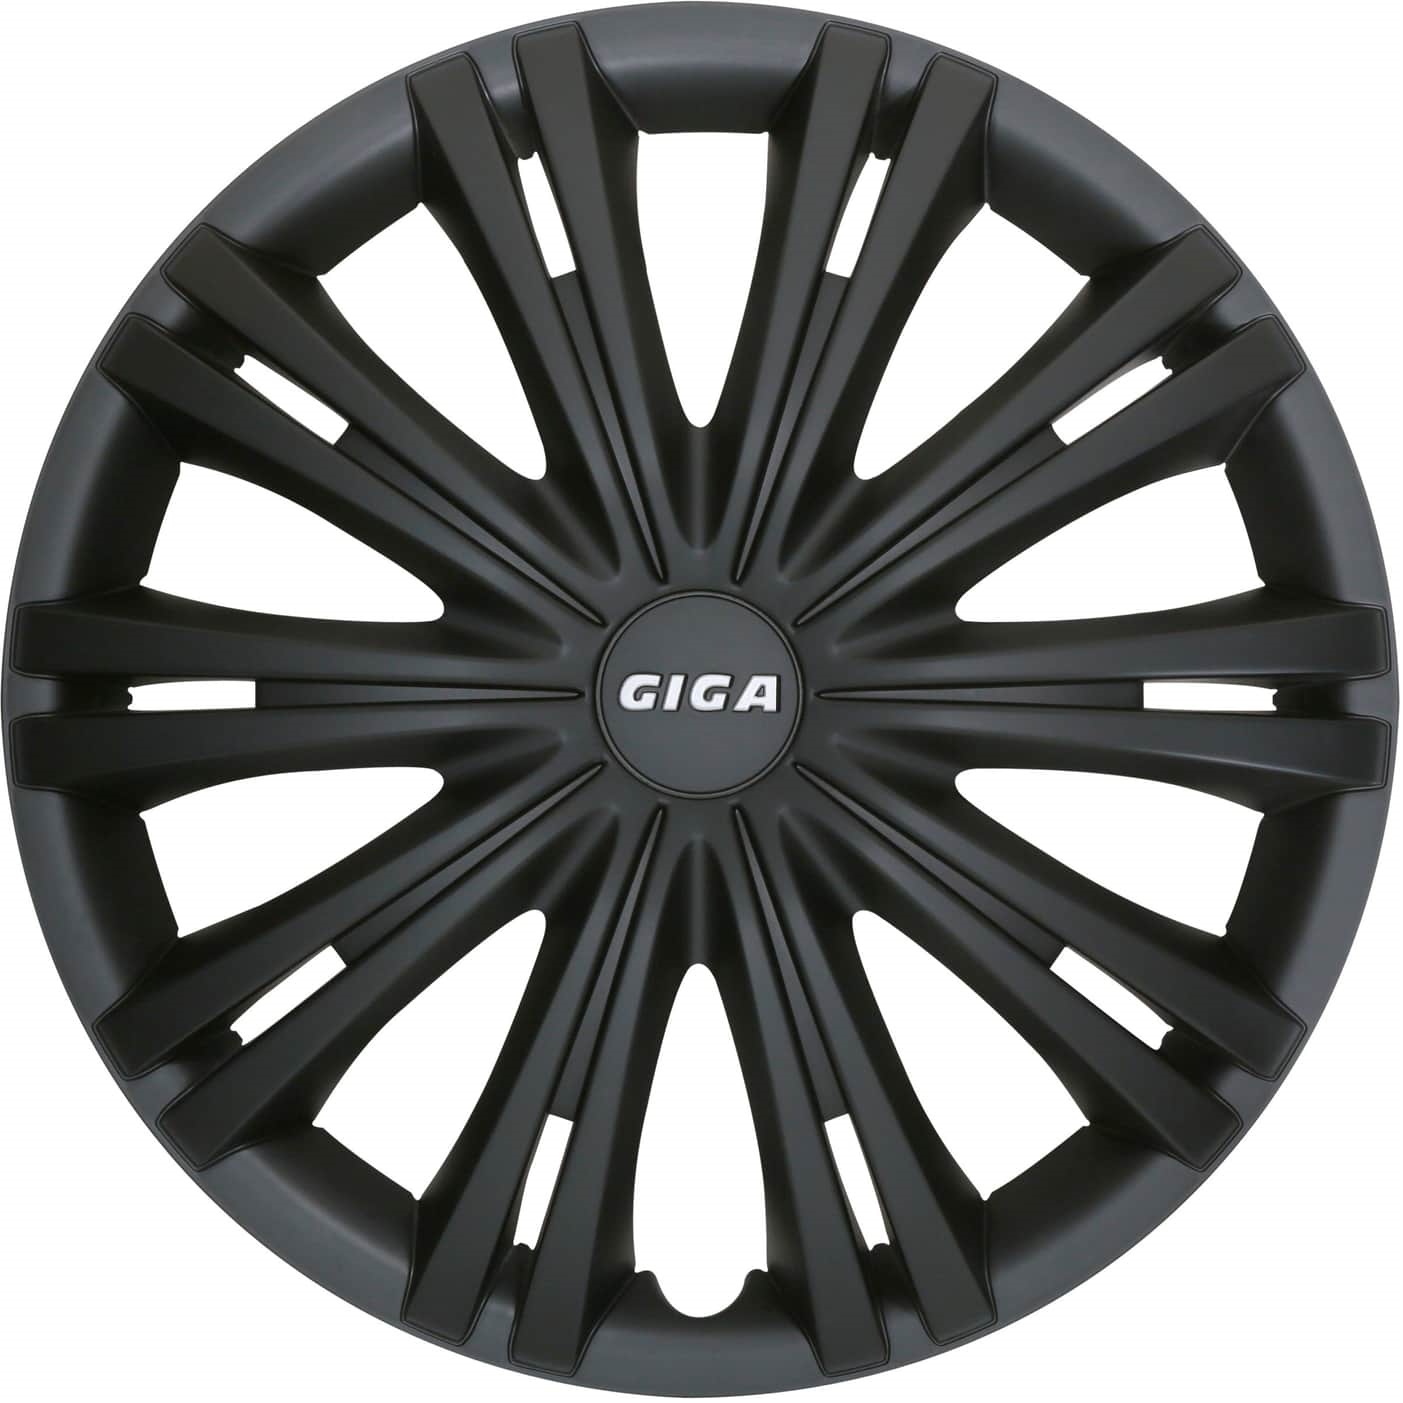 Elit DO GIGABLACK14 Steel Rim Wheel Cover, Set of 4 pcs. DOGIGABLACK14